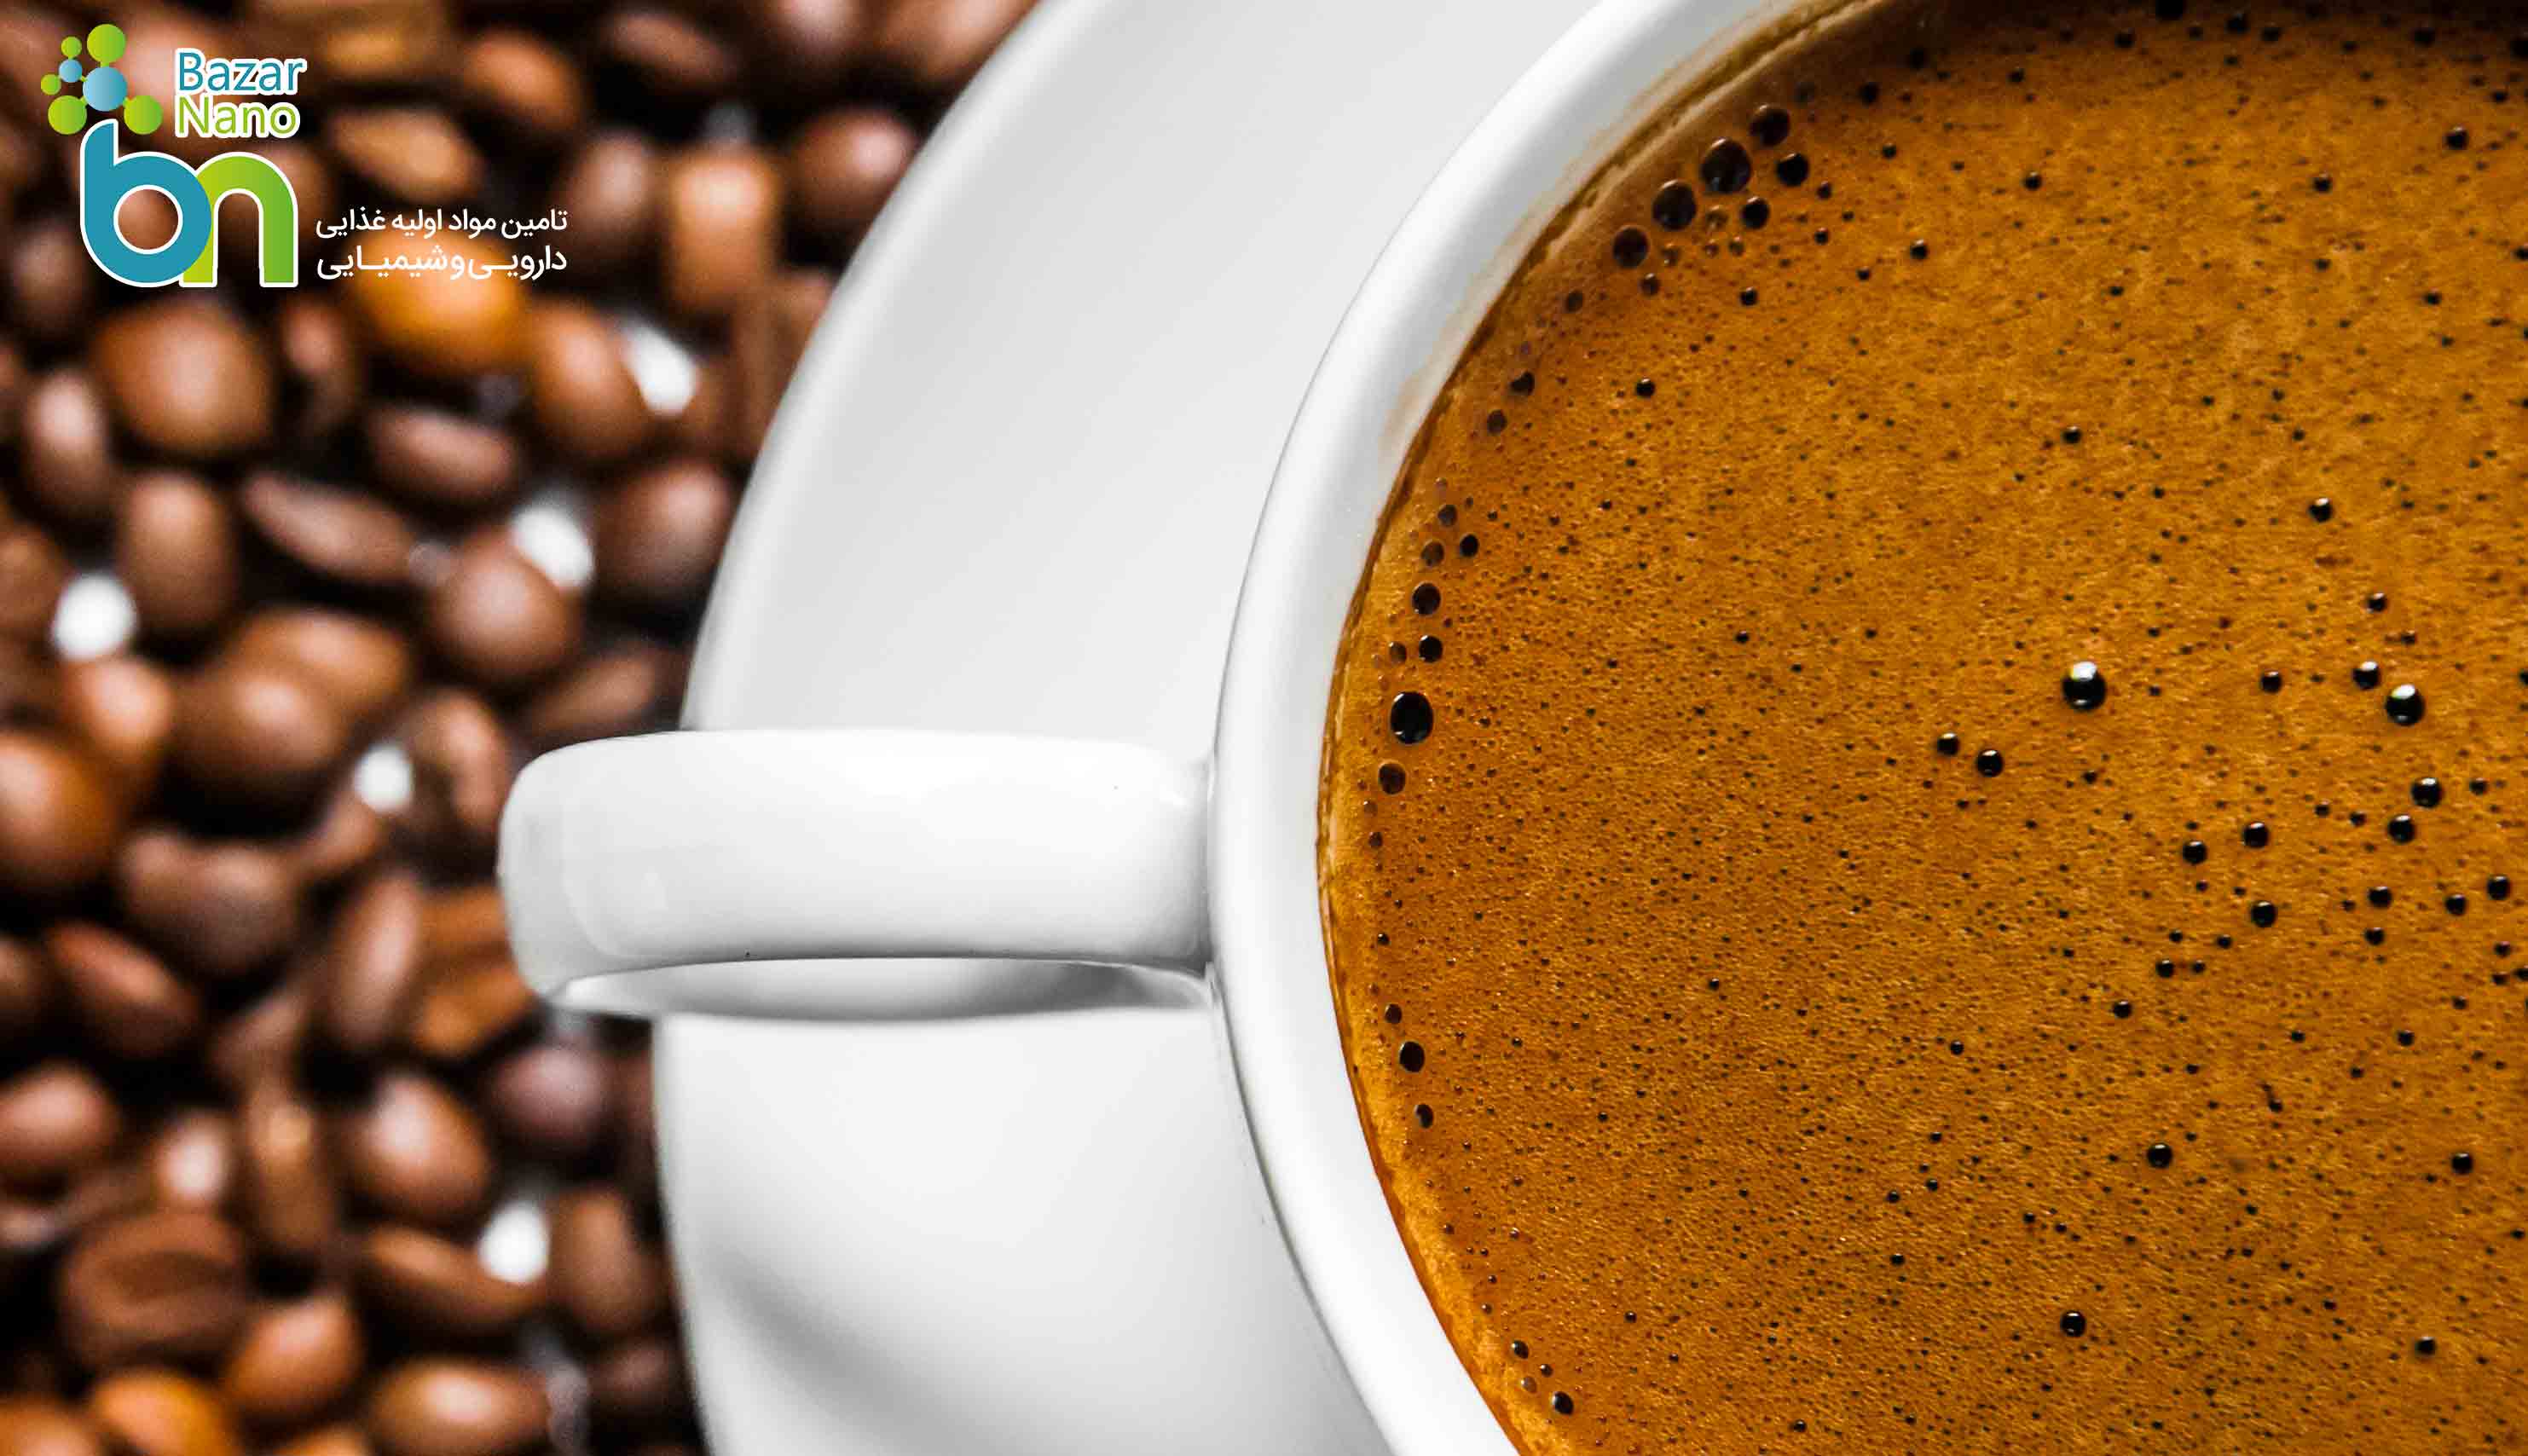 بررسی میزان کافئین در انواع قهوه